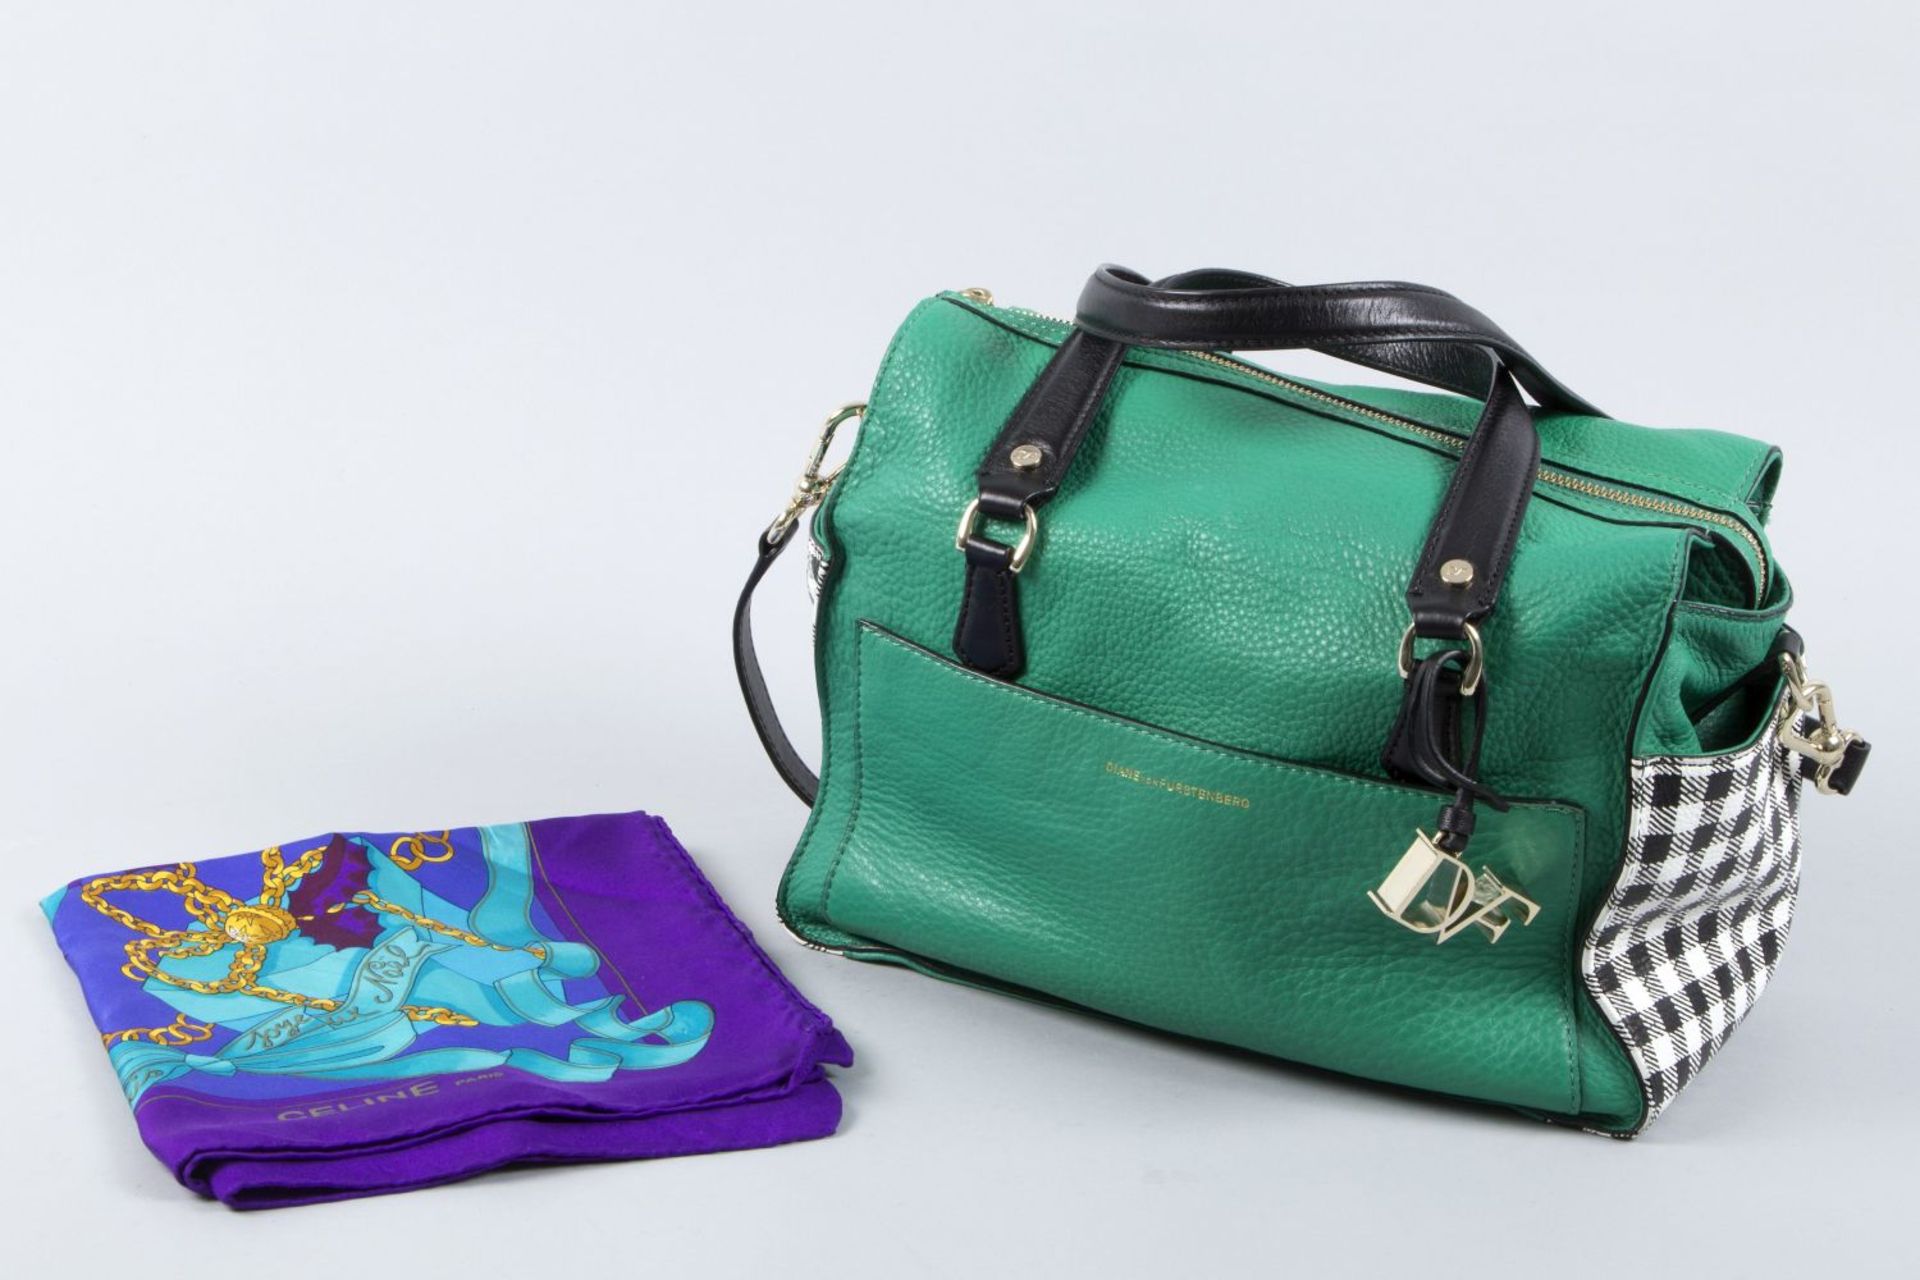 Handtasche von Diane von Fürstenberg und Celine-SeidentuchGrünes Nappaleder, seitliche Taschen in